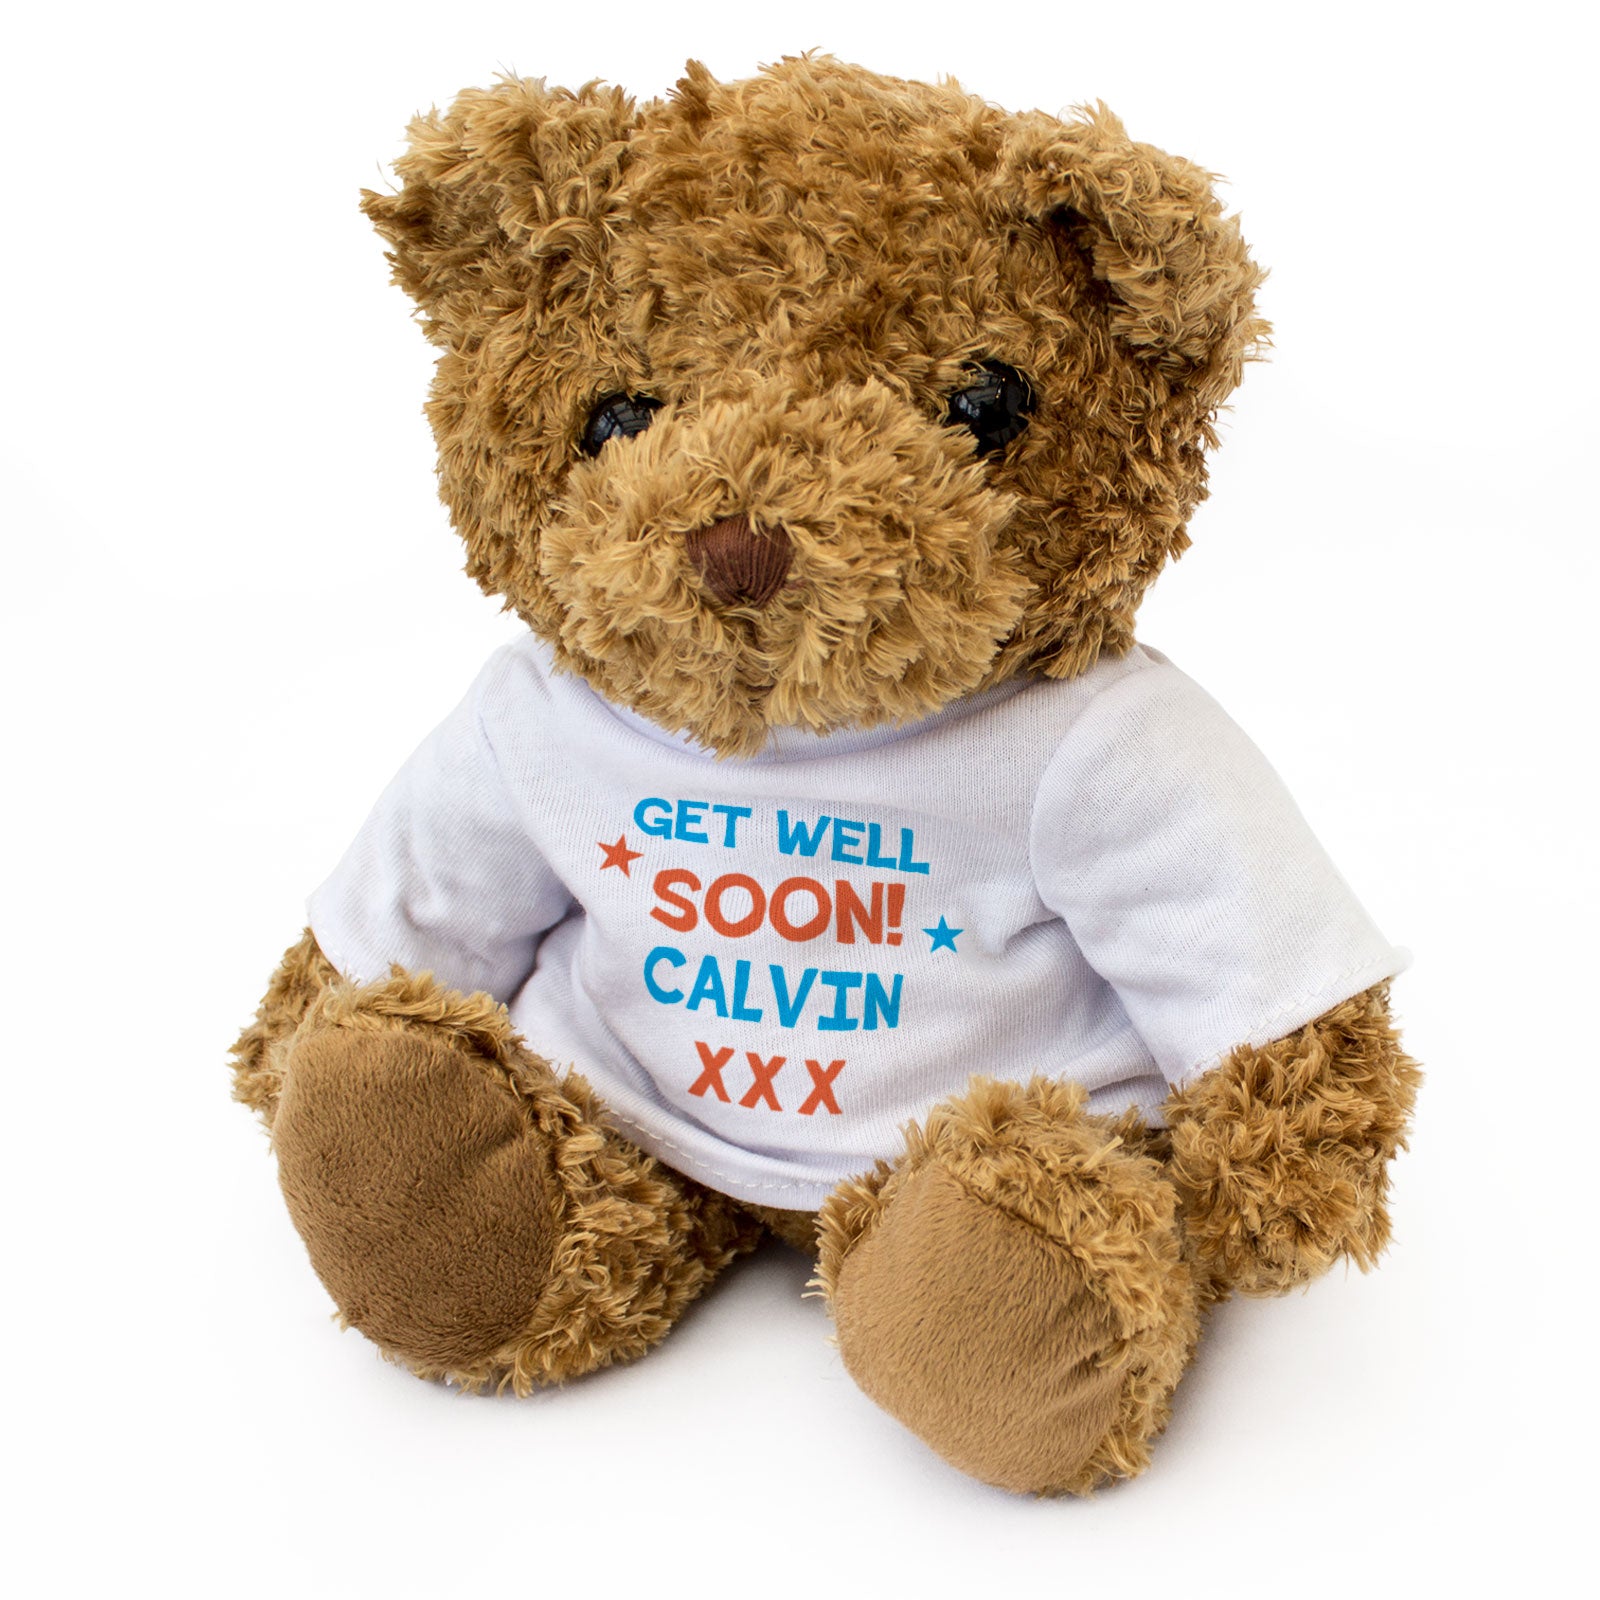 Get Well Soon Calvin - Teddy Bear